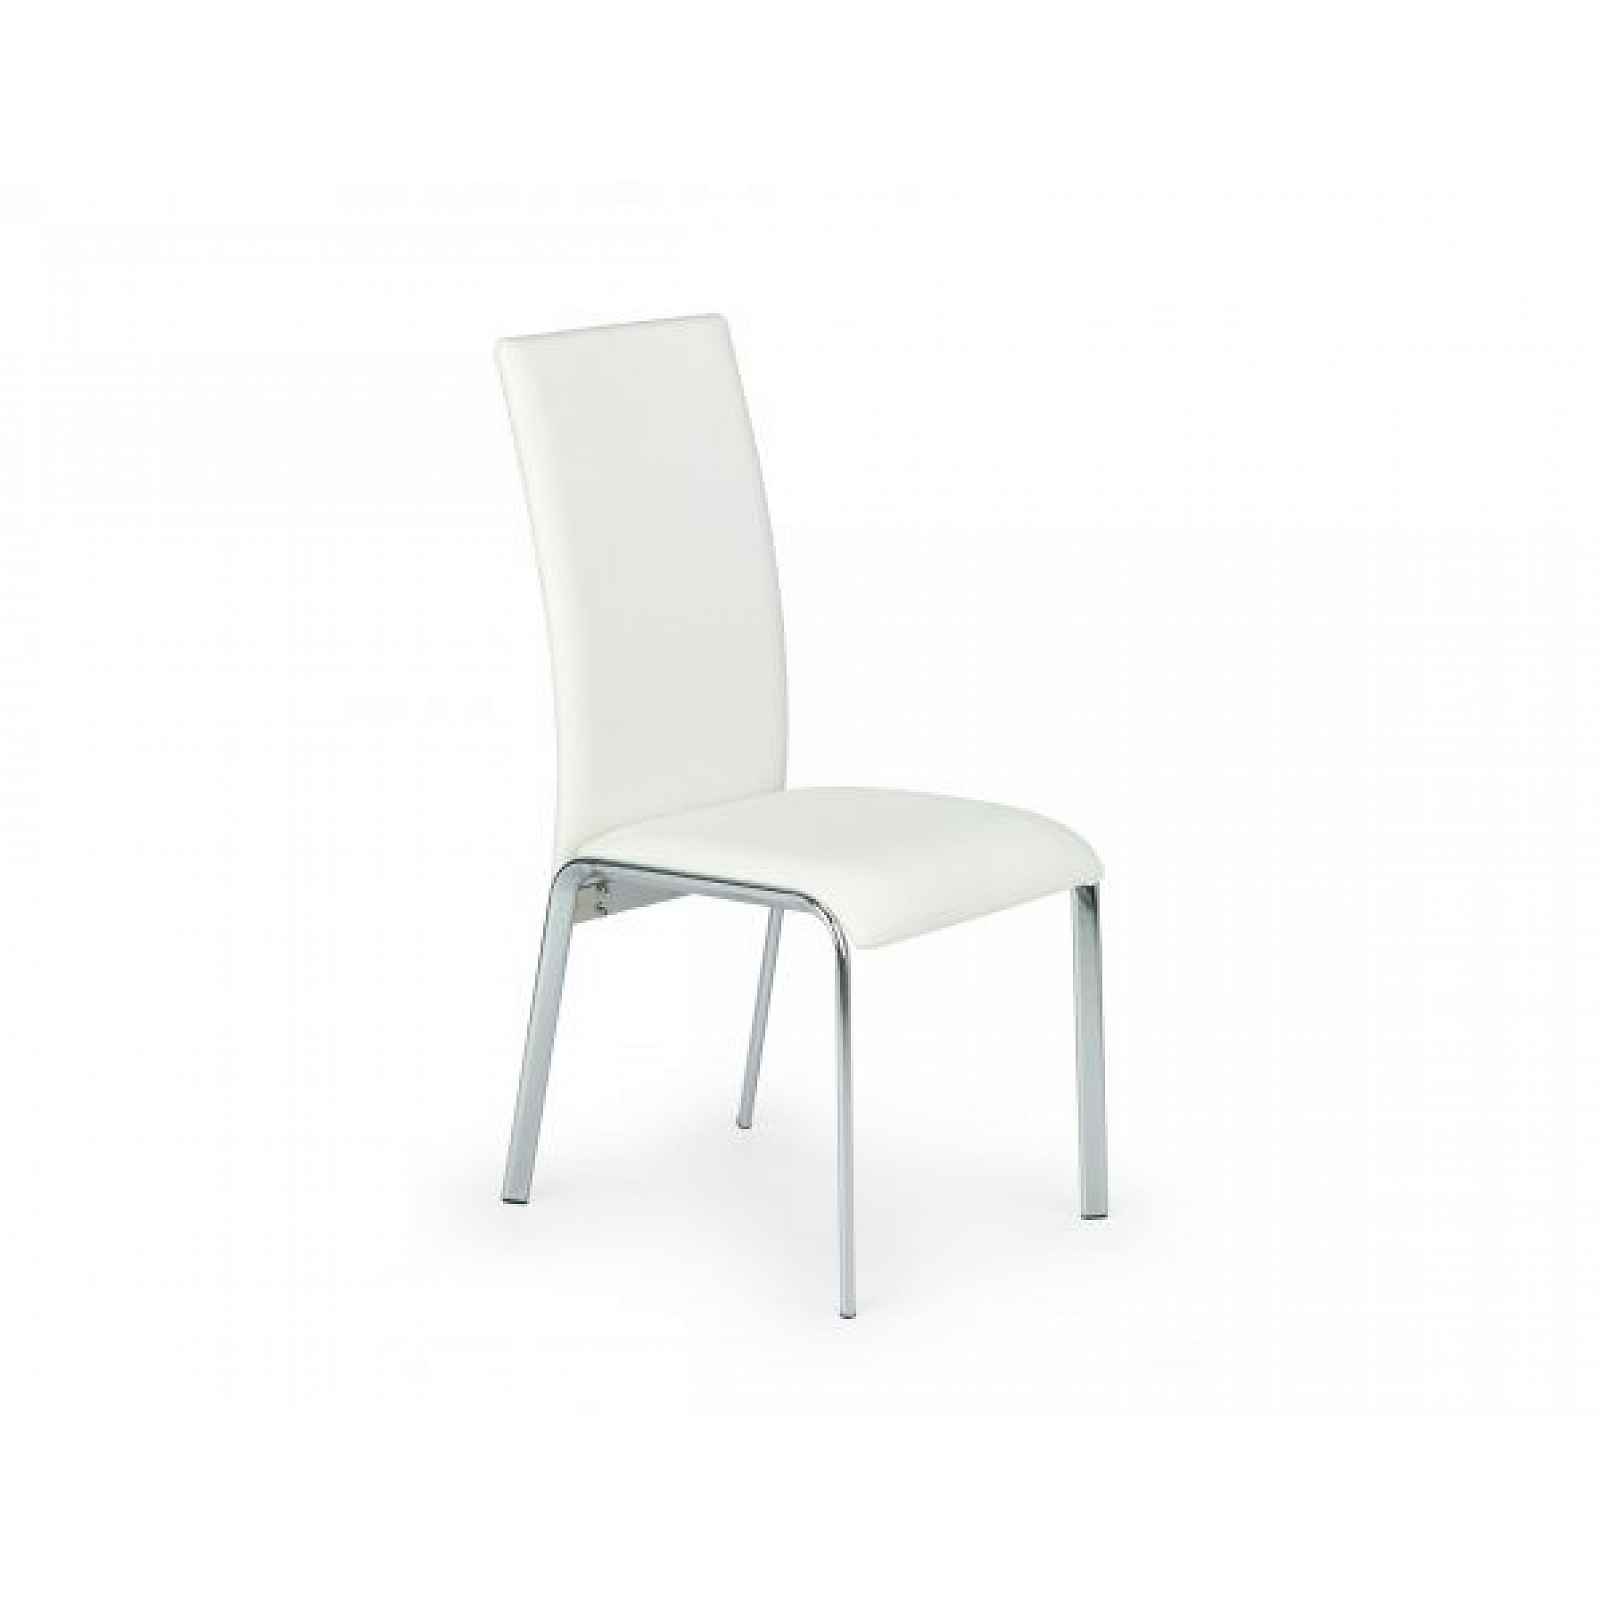 Bílá jídelní židle